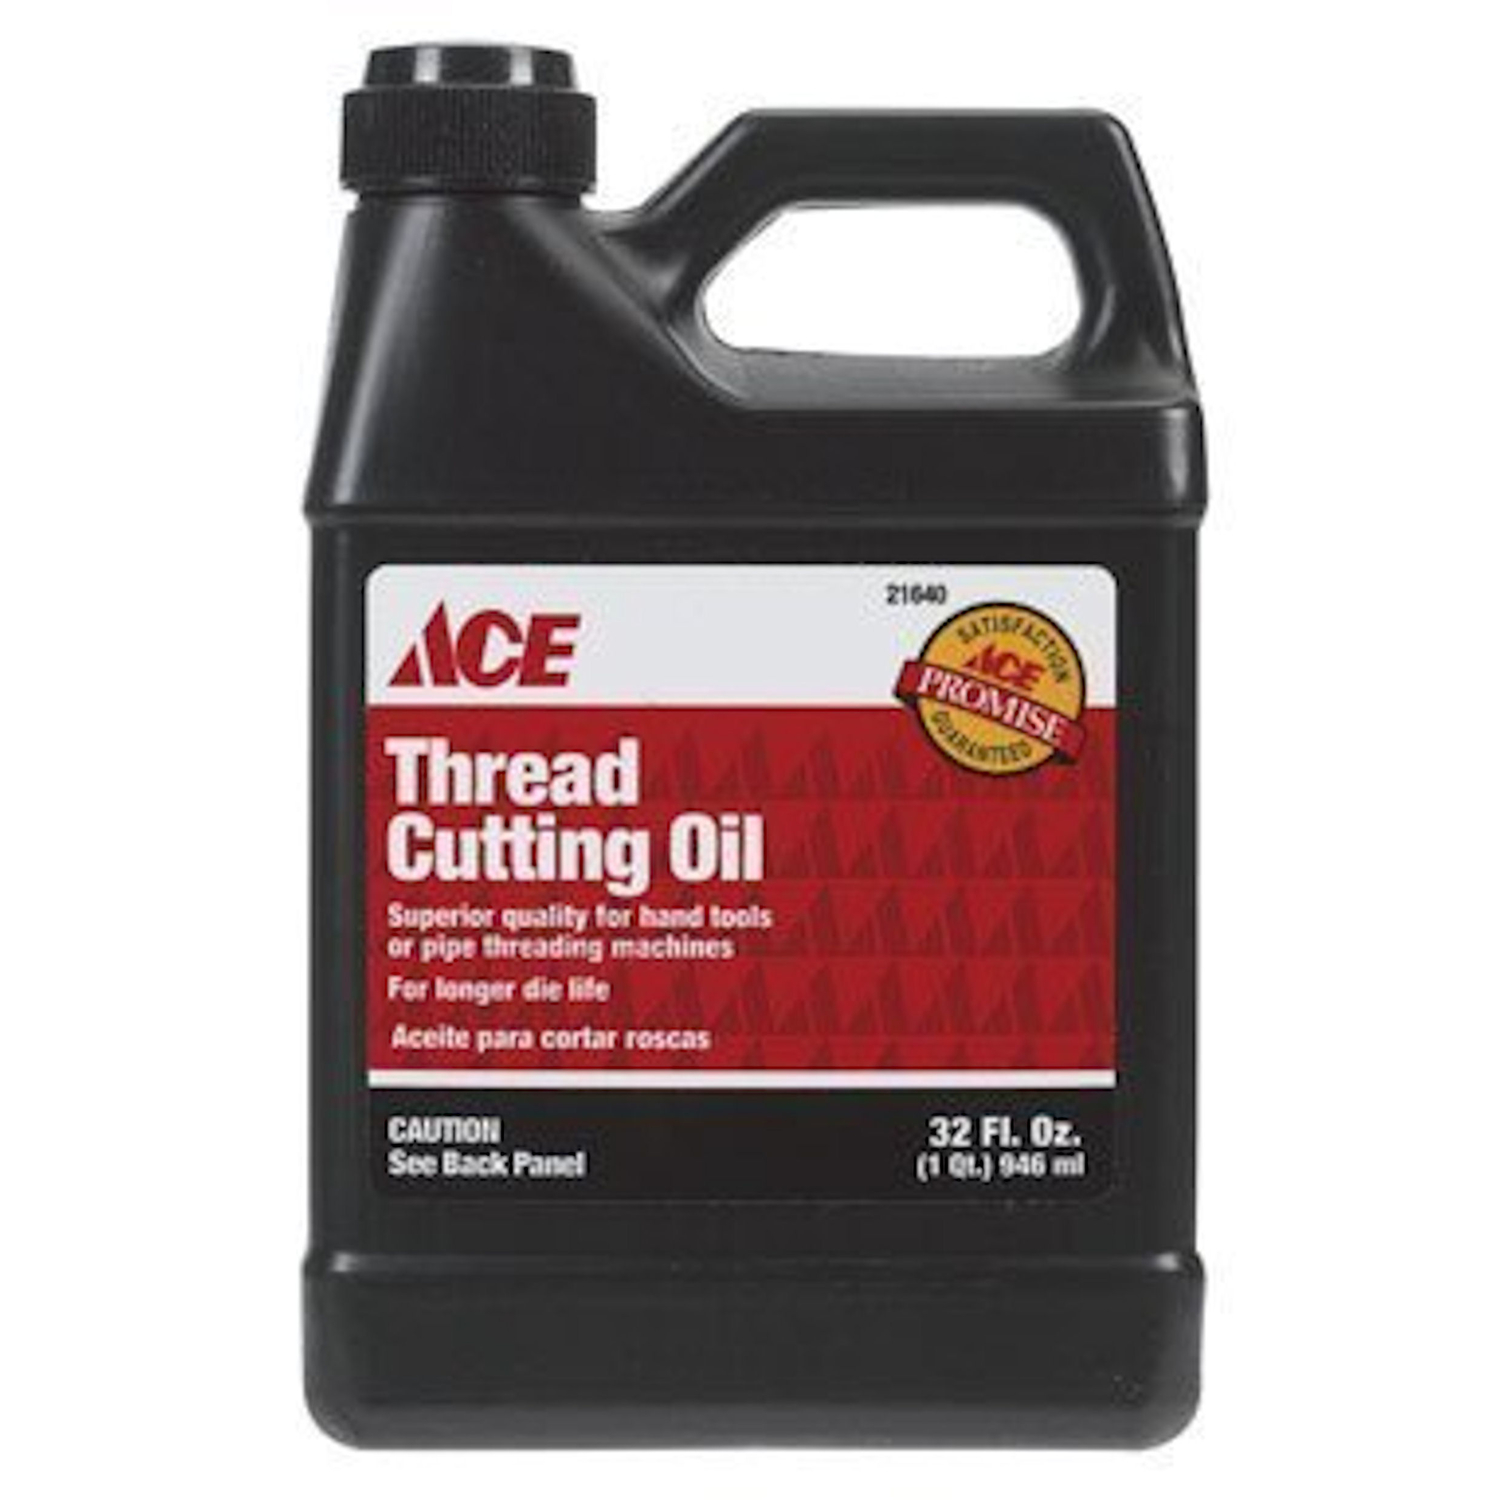 Ace Thread Cutting Oil 32 oz